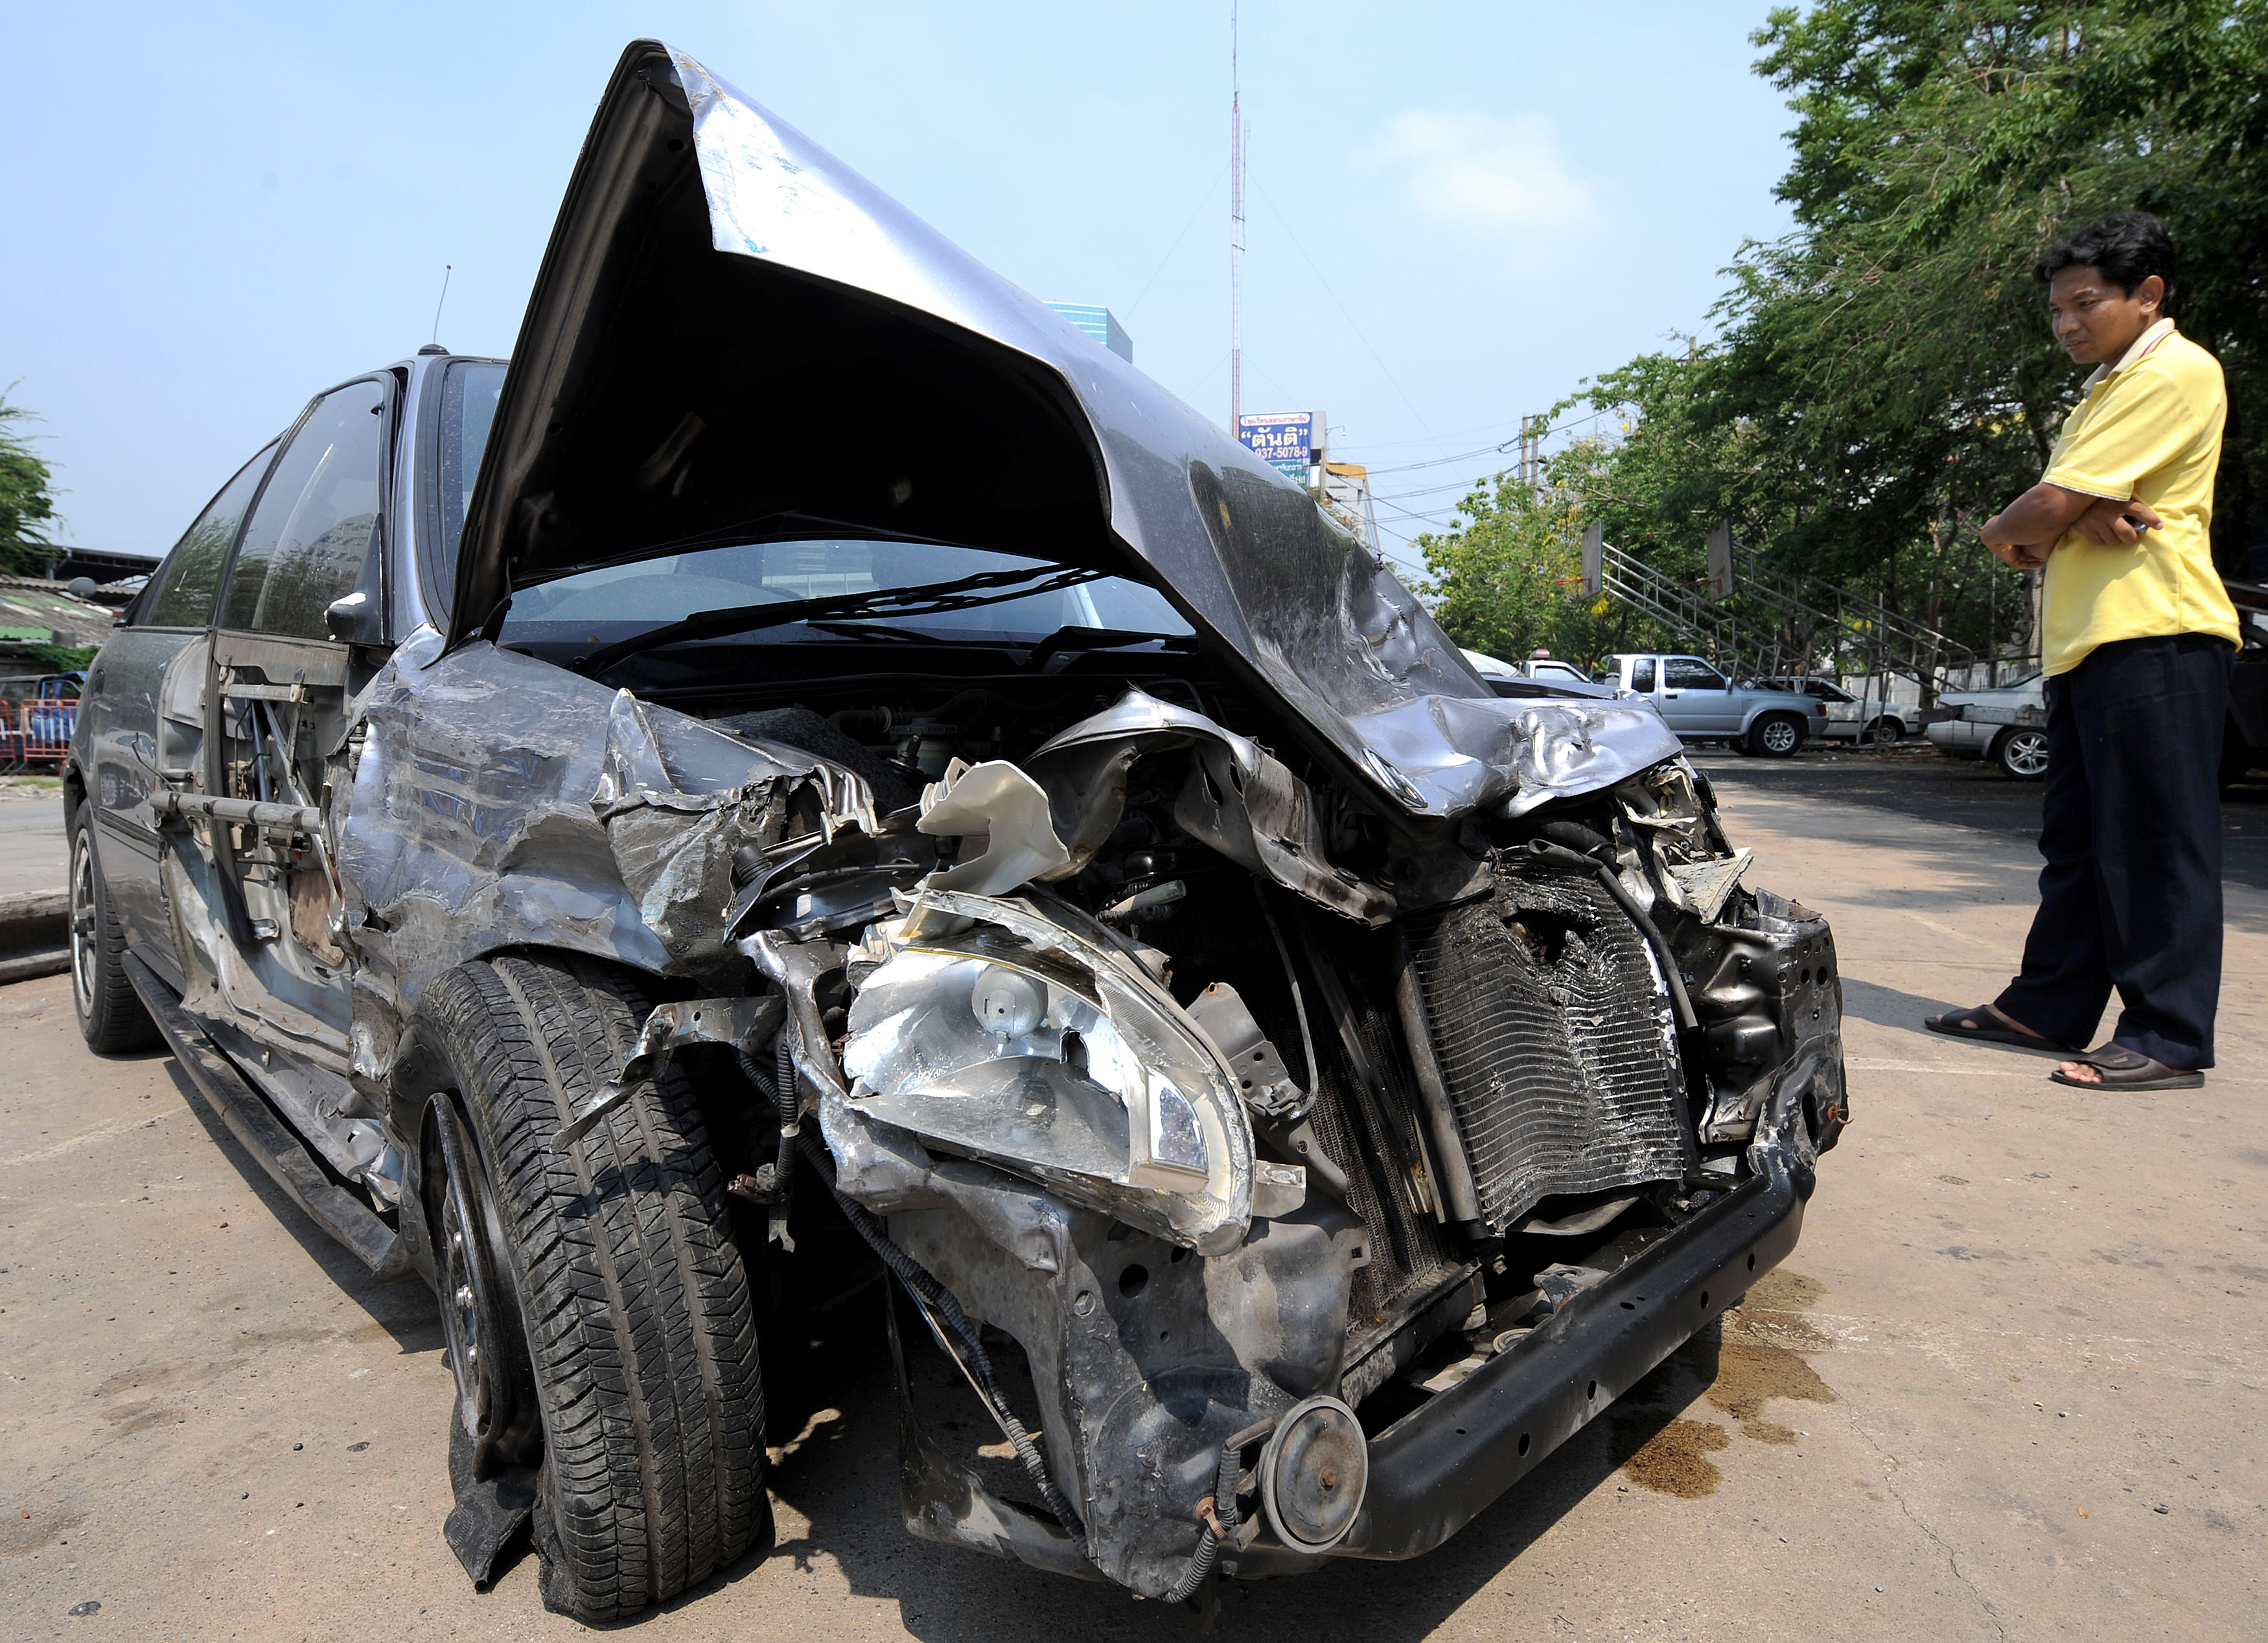 Majdnem kétszázan haltak meg mindössze három nap alatt közúti balesetekben Thaiföldön